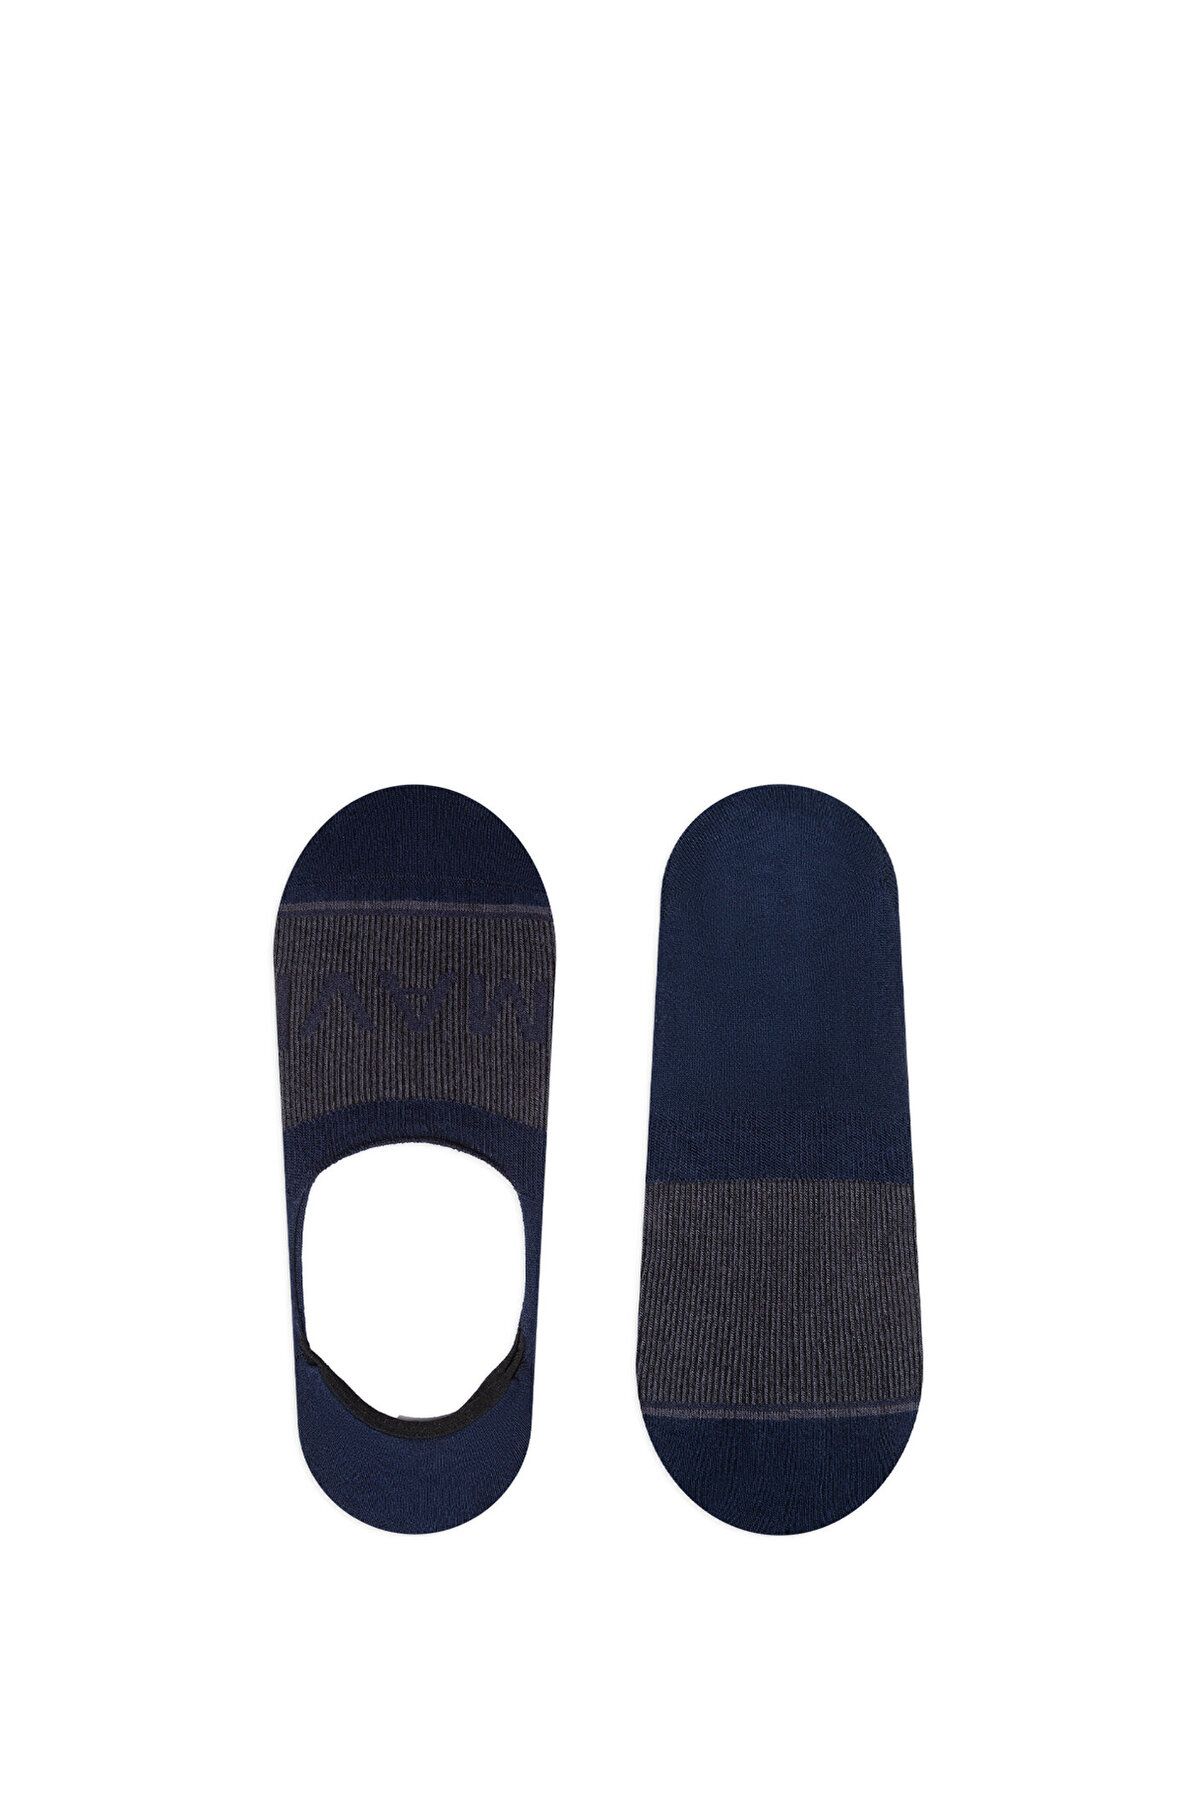 Mavi Lacivert Babet Çorabı 0911319-70500